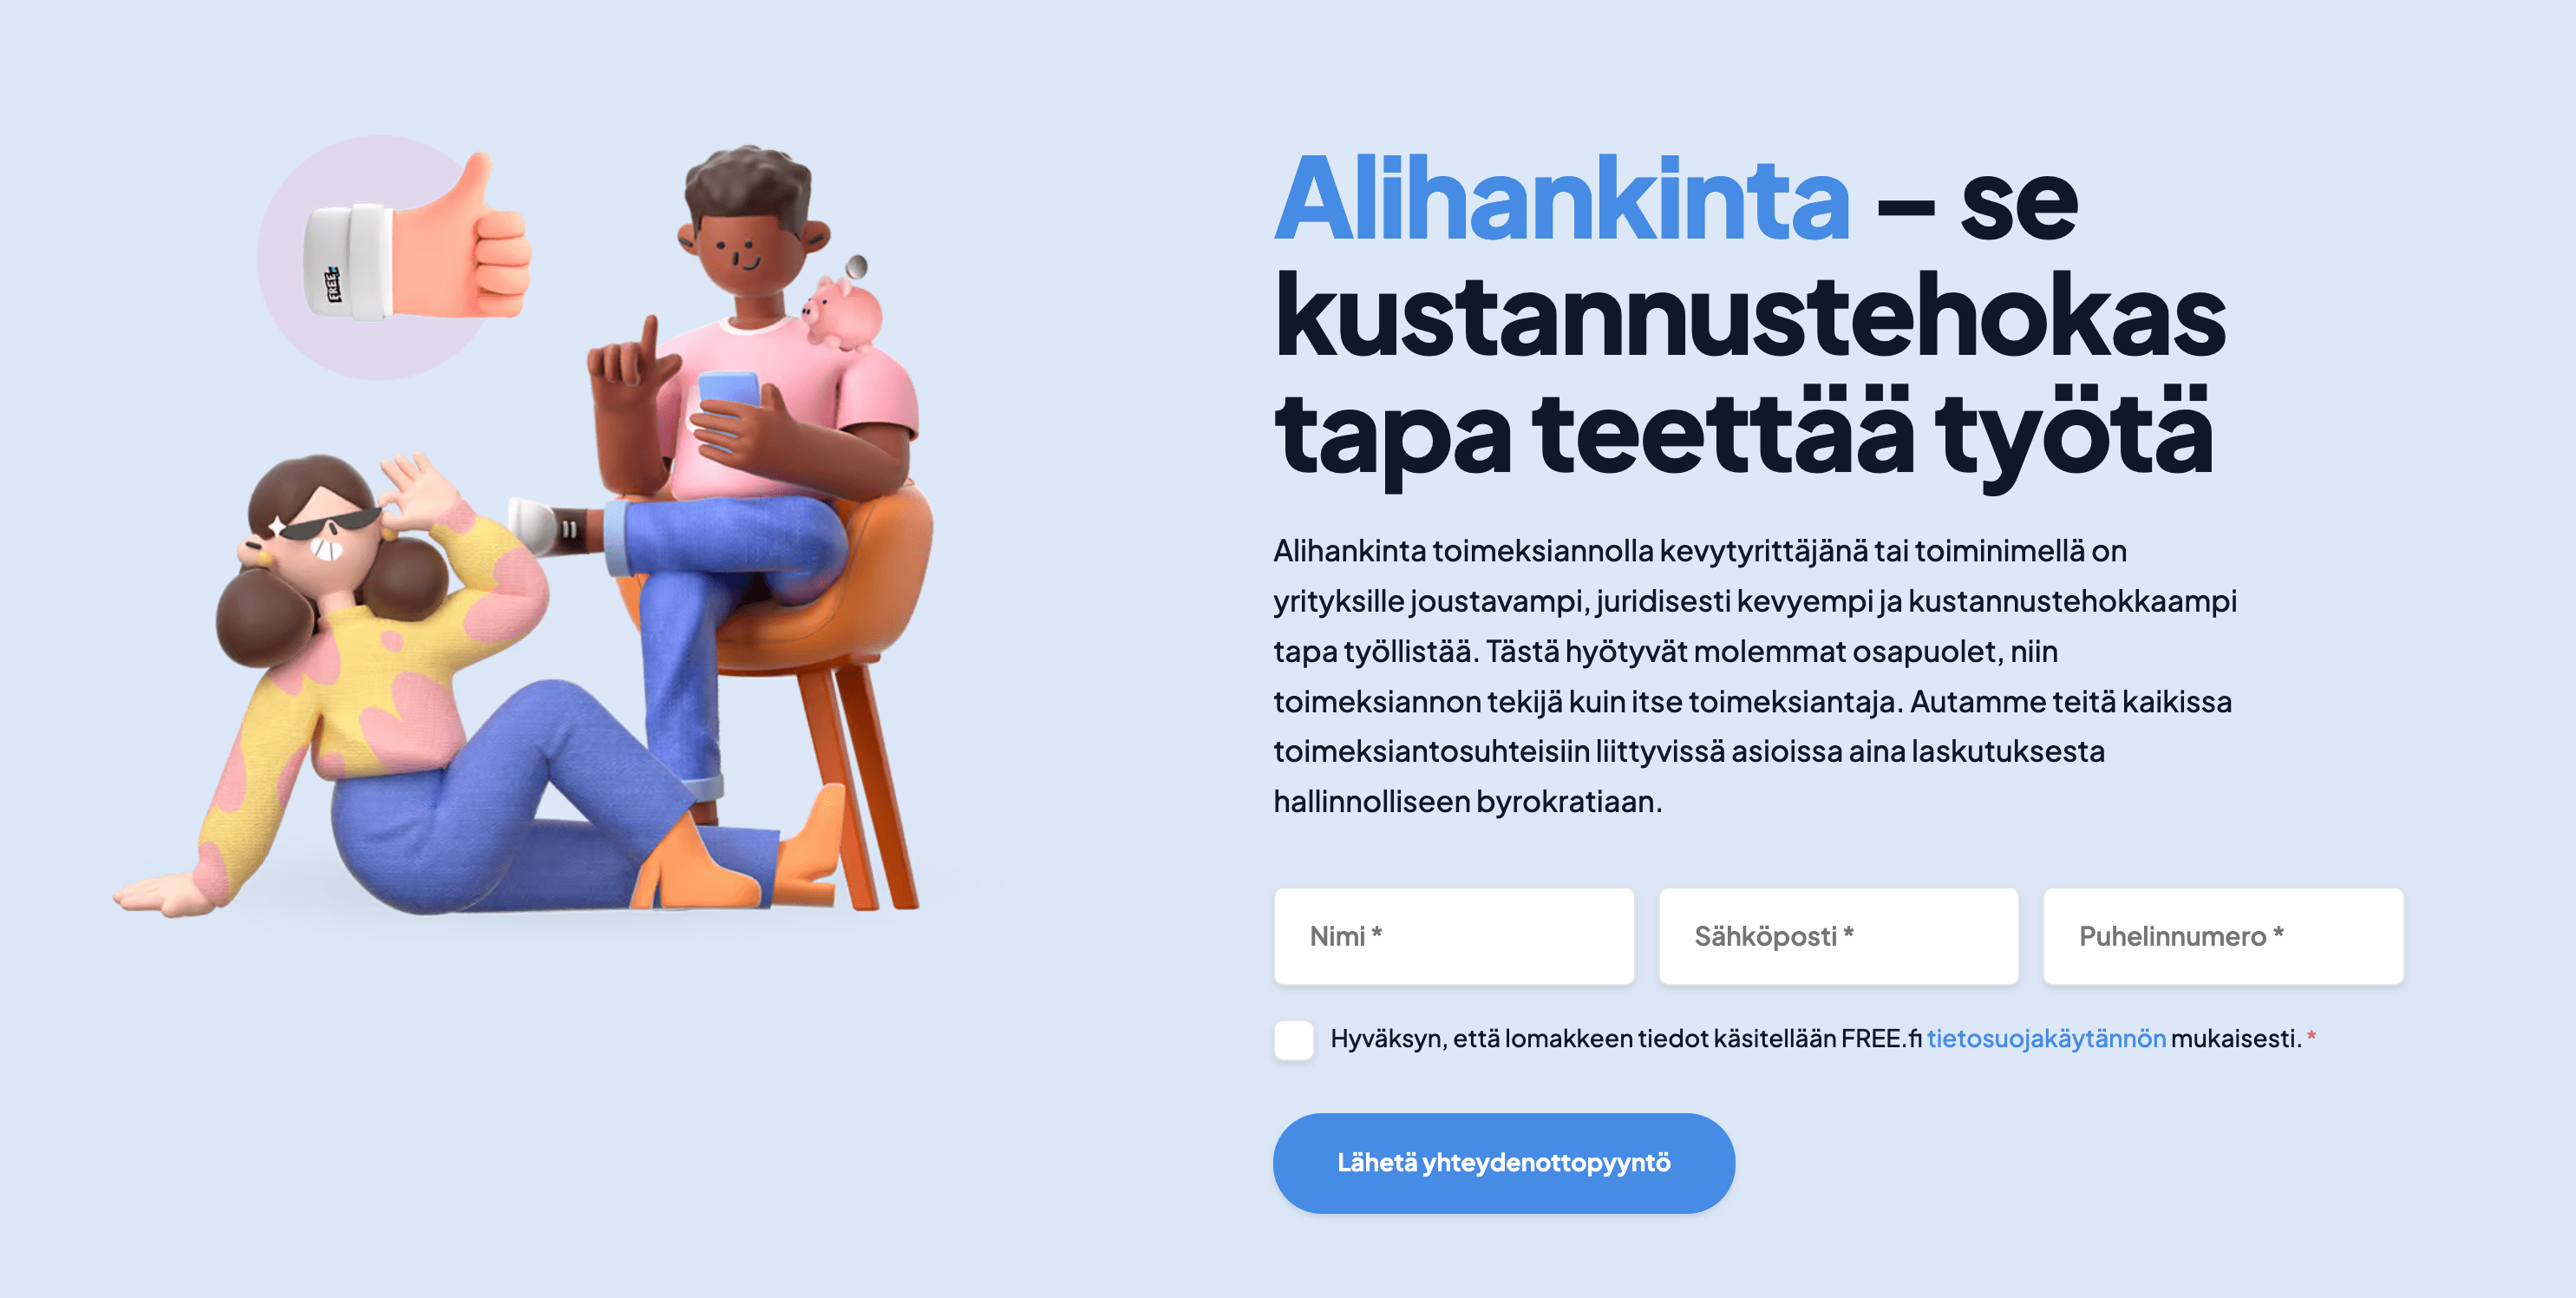 FREE.fi uudistetut työllistäjän nettisivut